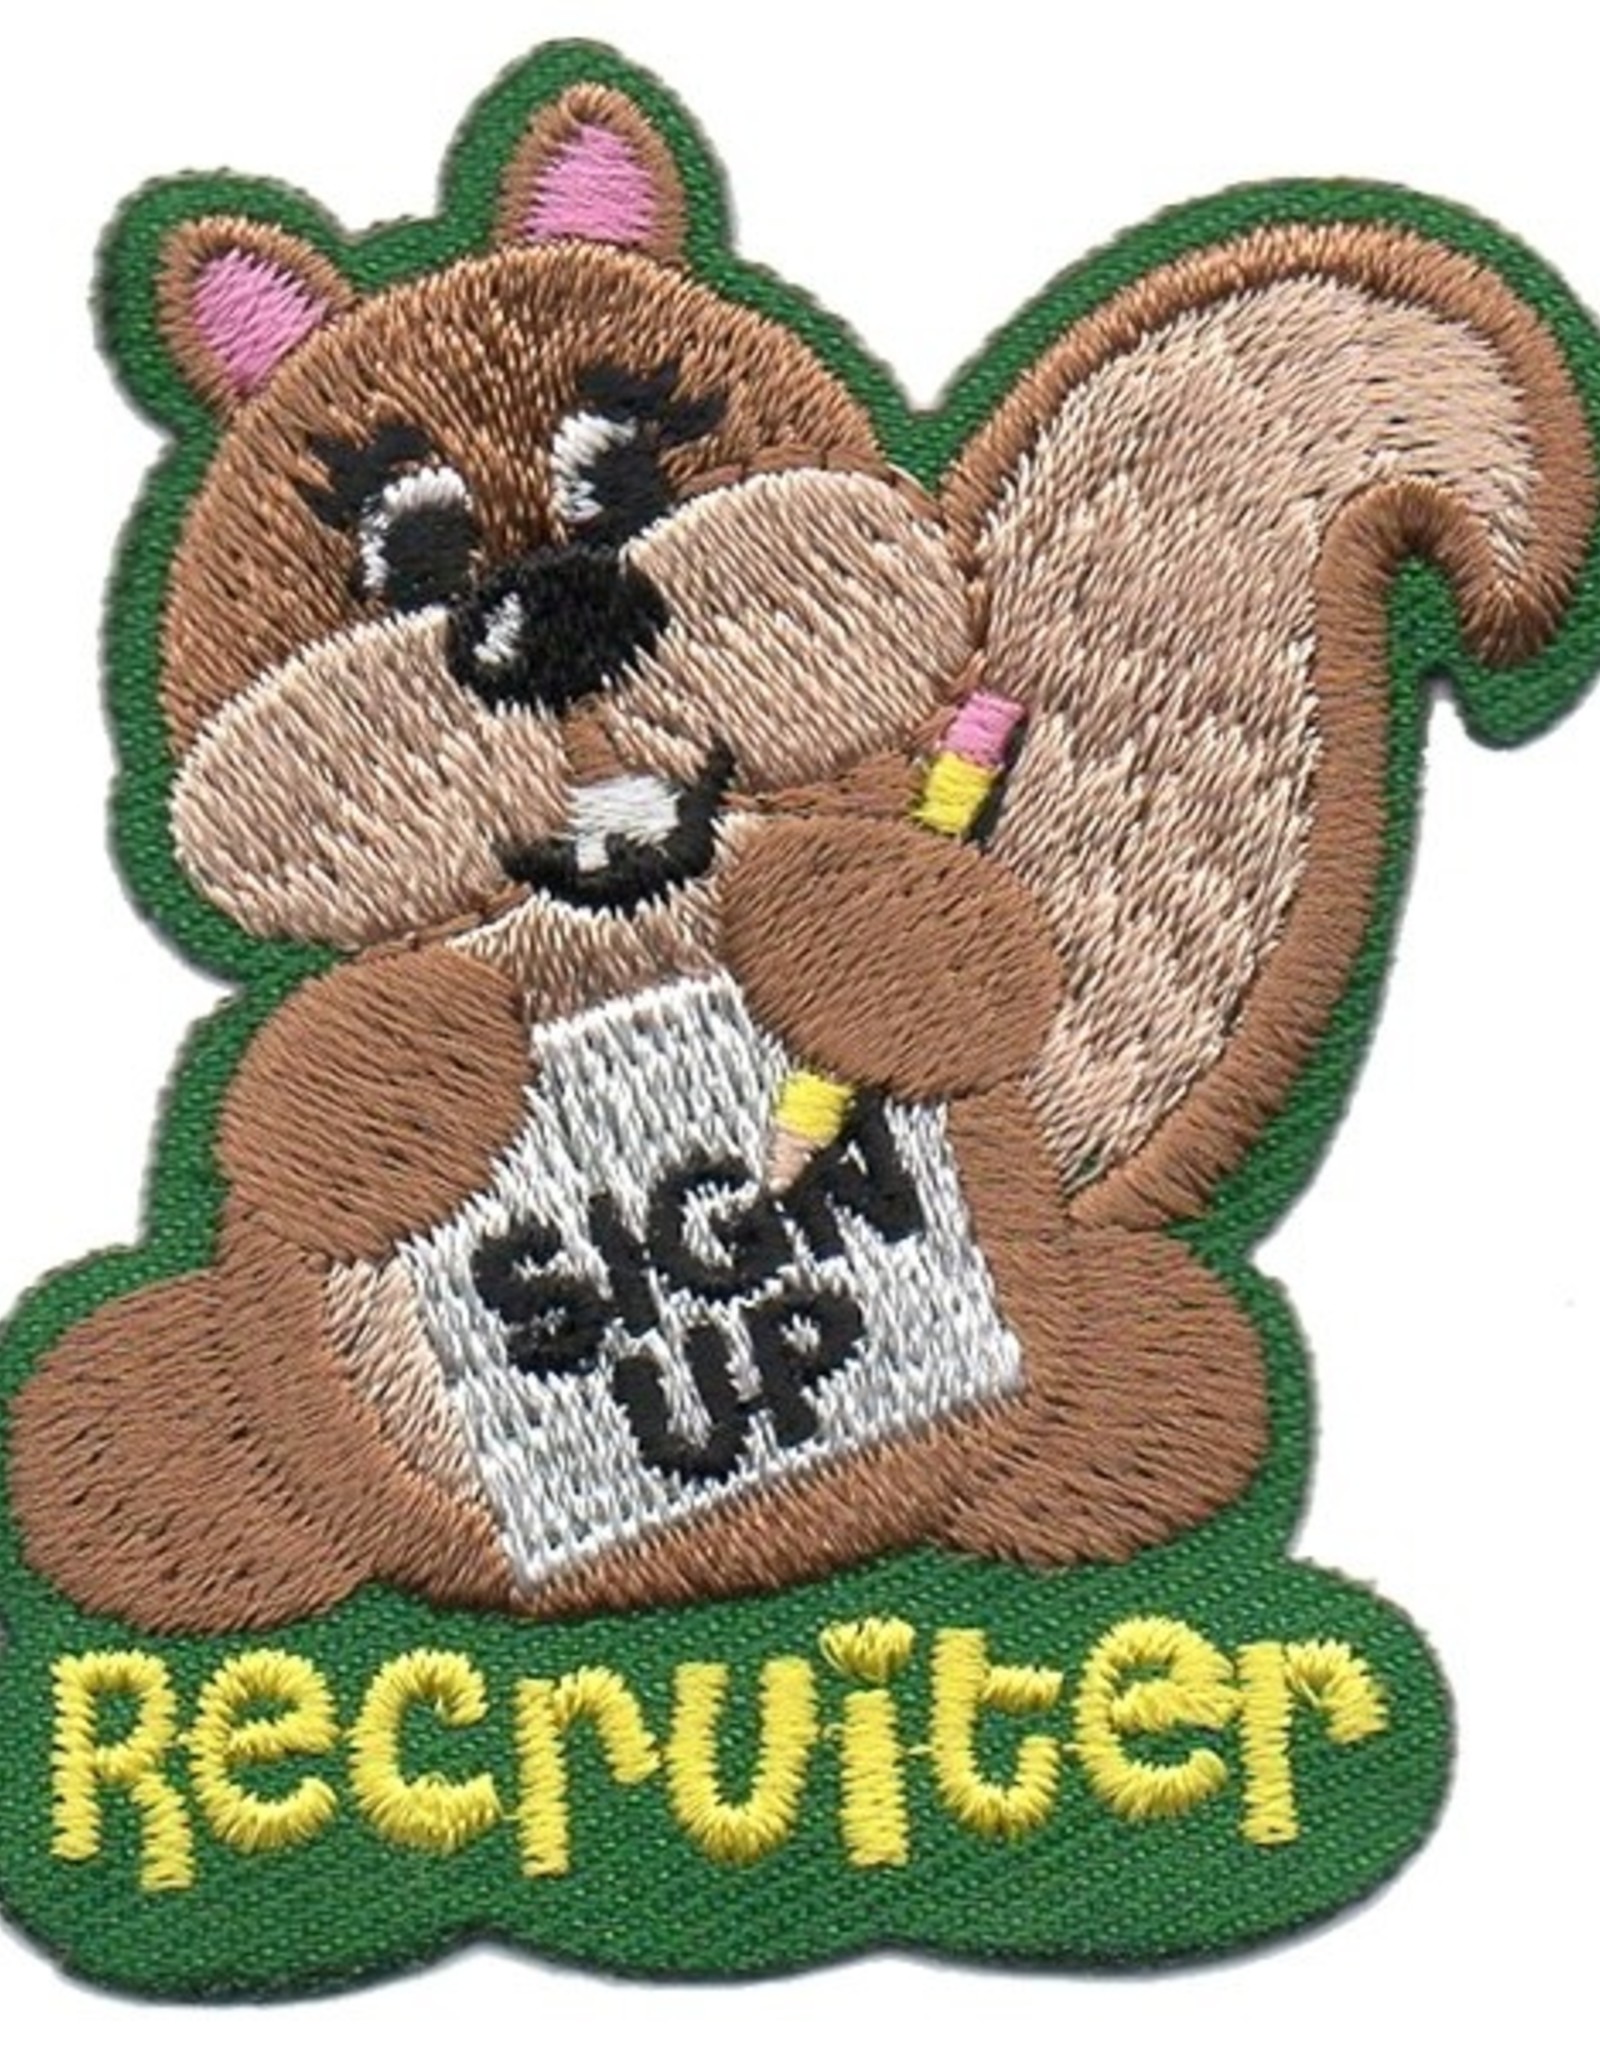 *Recruiter Squirrel Fun Patch